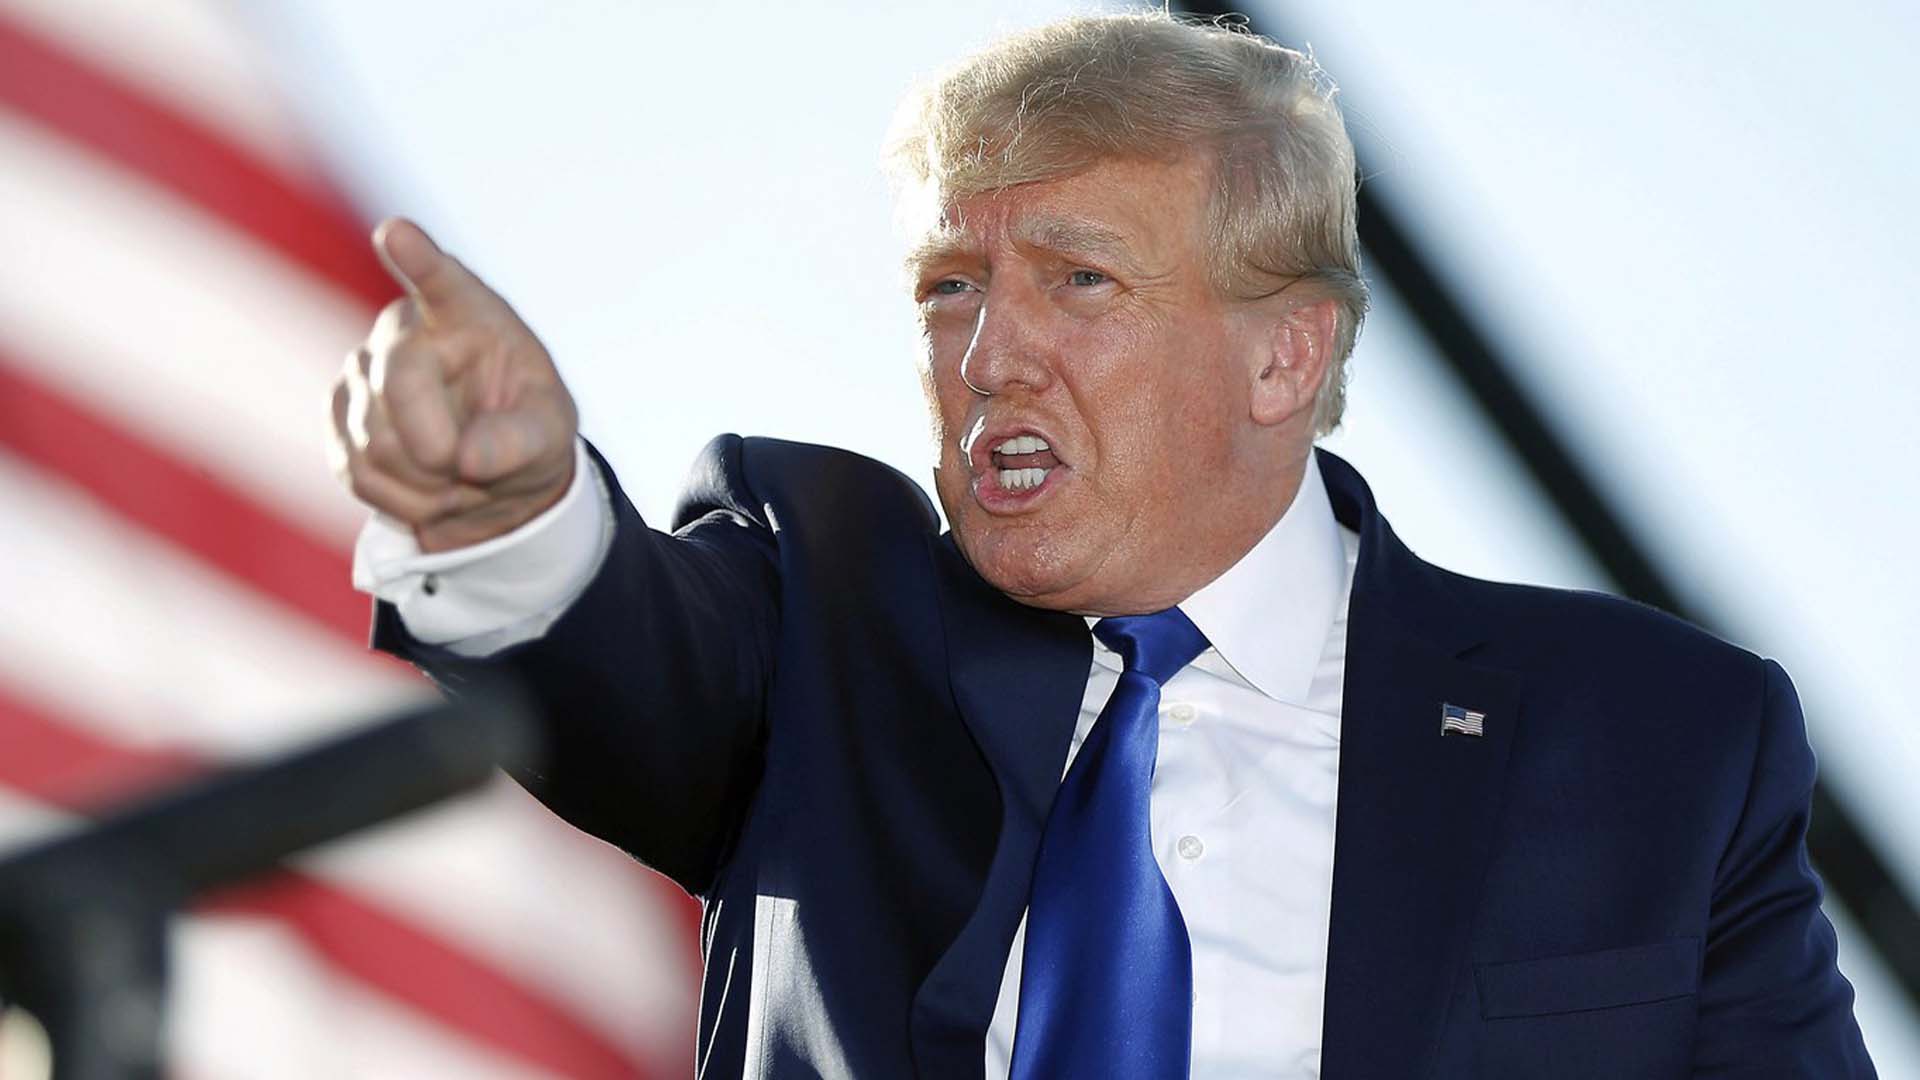 L'ancien président Donald Trump prend la parole lors d'un rassemblement au Delaware County Fairgrounds, le 23 avril 2022, dans le Delaware, Ohio.